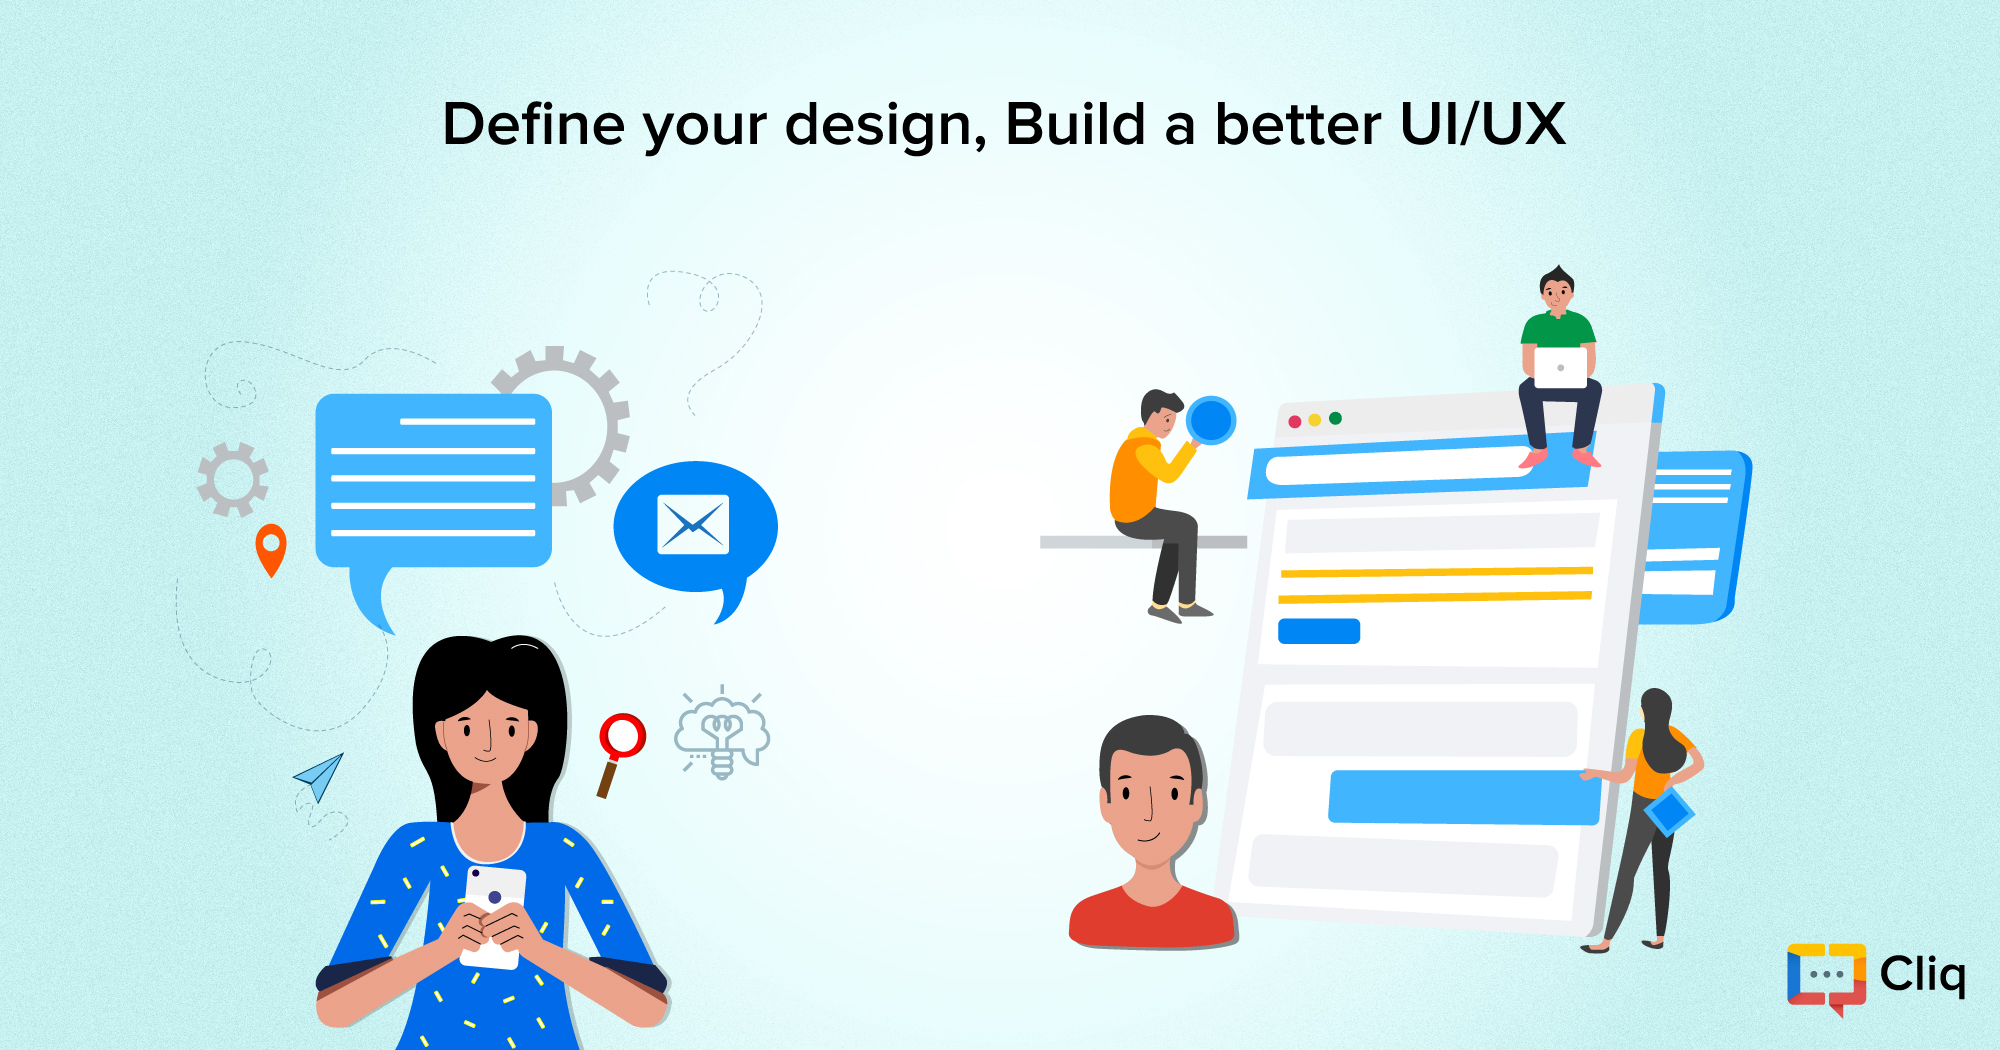 Define your design; Build a better UI/UX